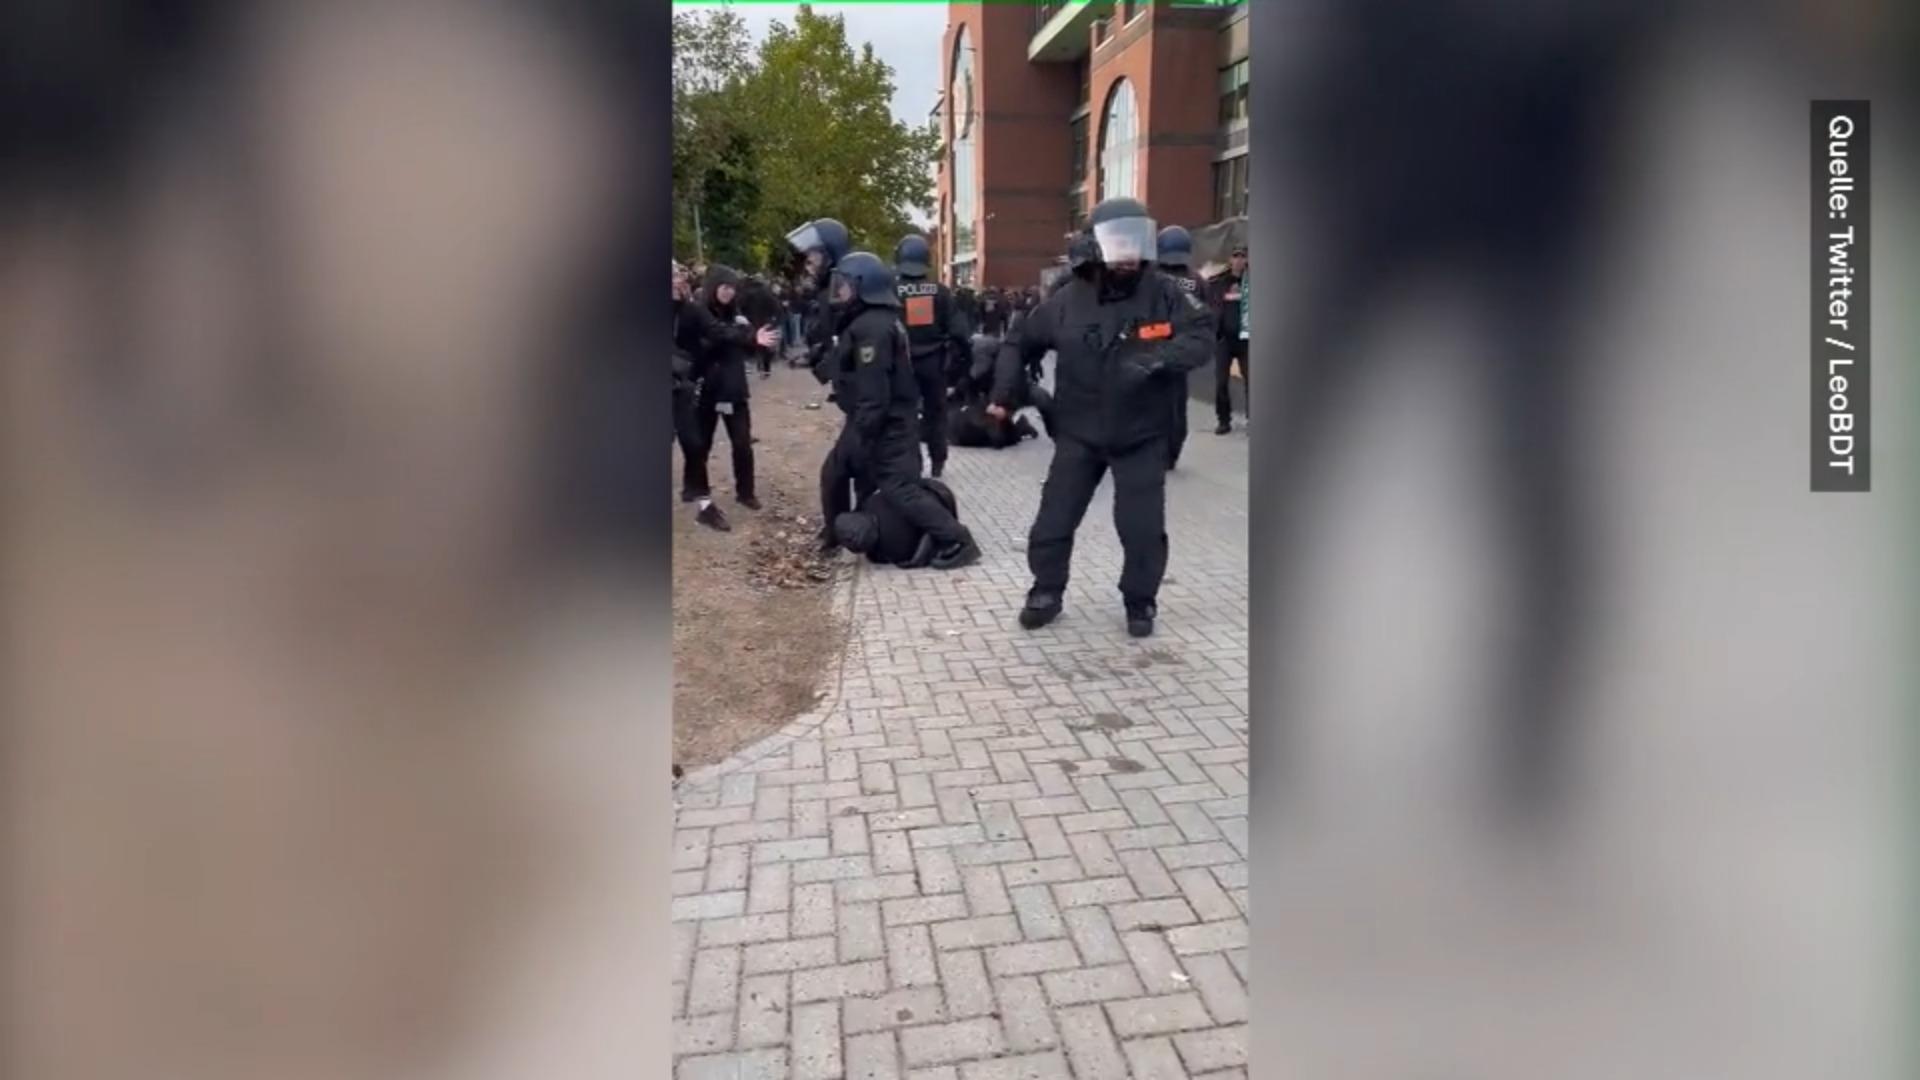 Polizei prügelt auf Fußballfan ein: "Seid ihr bescheuert?" Skandal-Video aus Hamburg